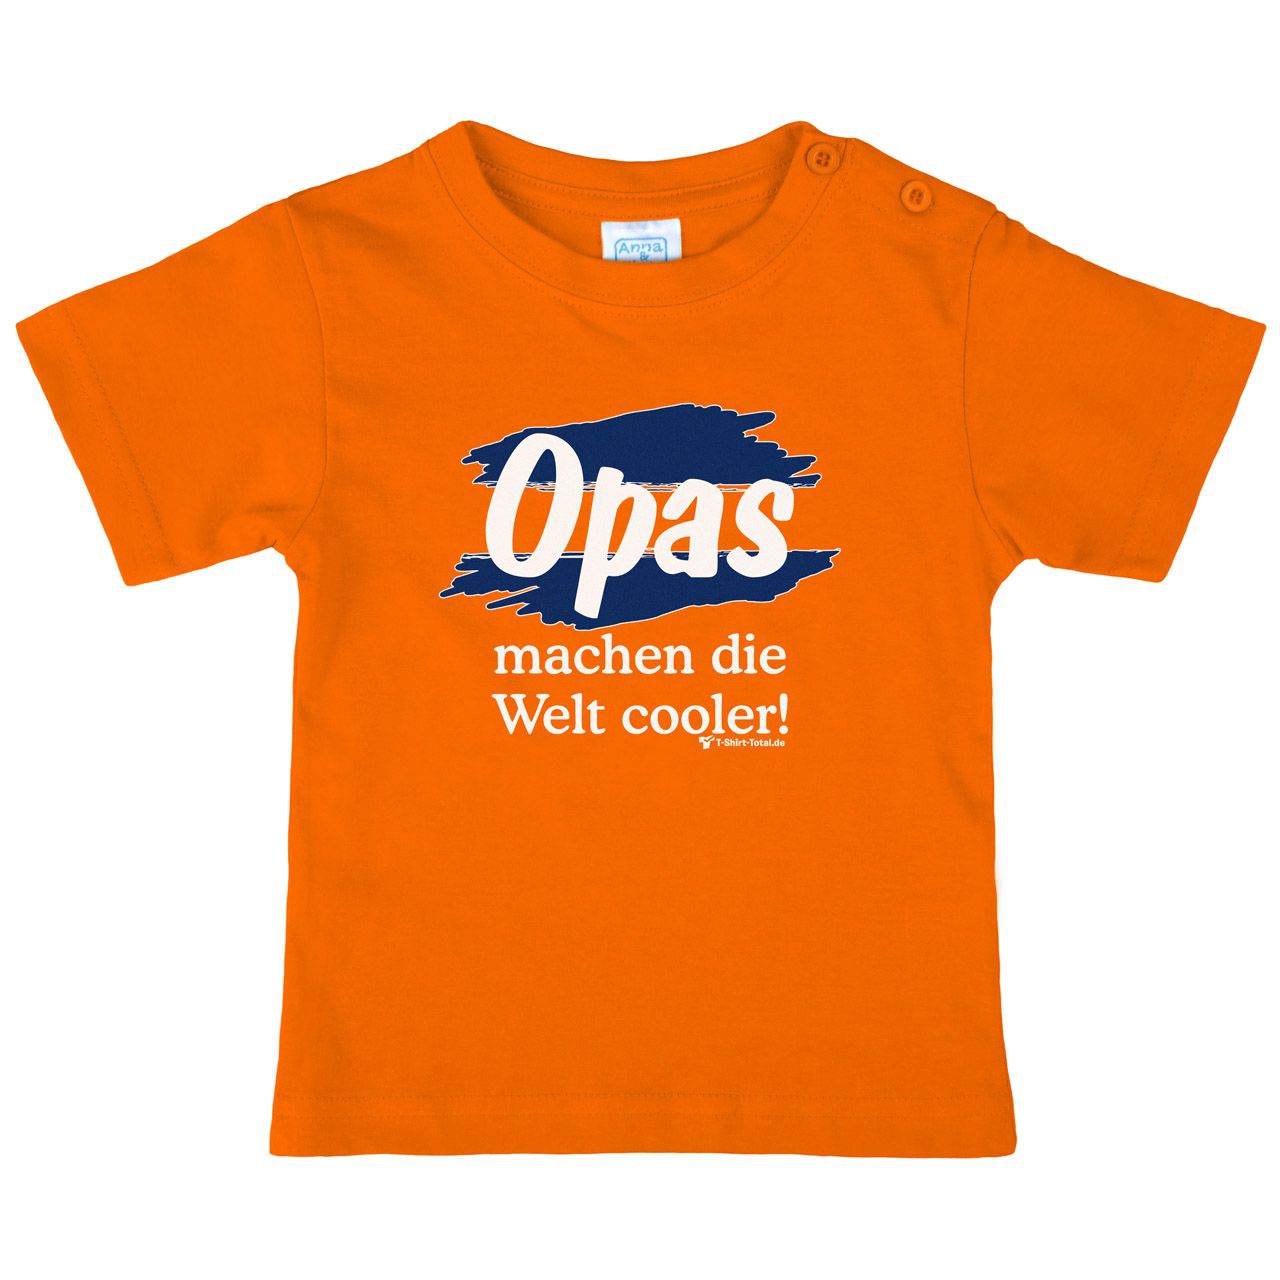 Welt cooler Opa Kinder T-Shirt orange 92